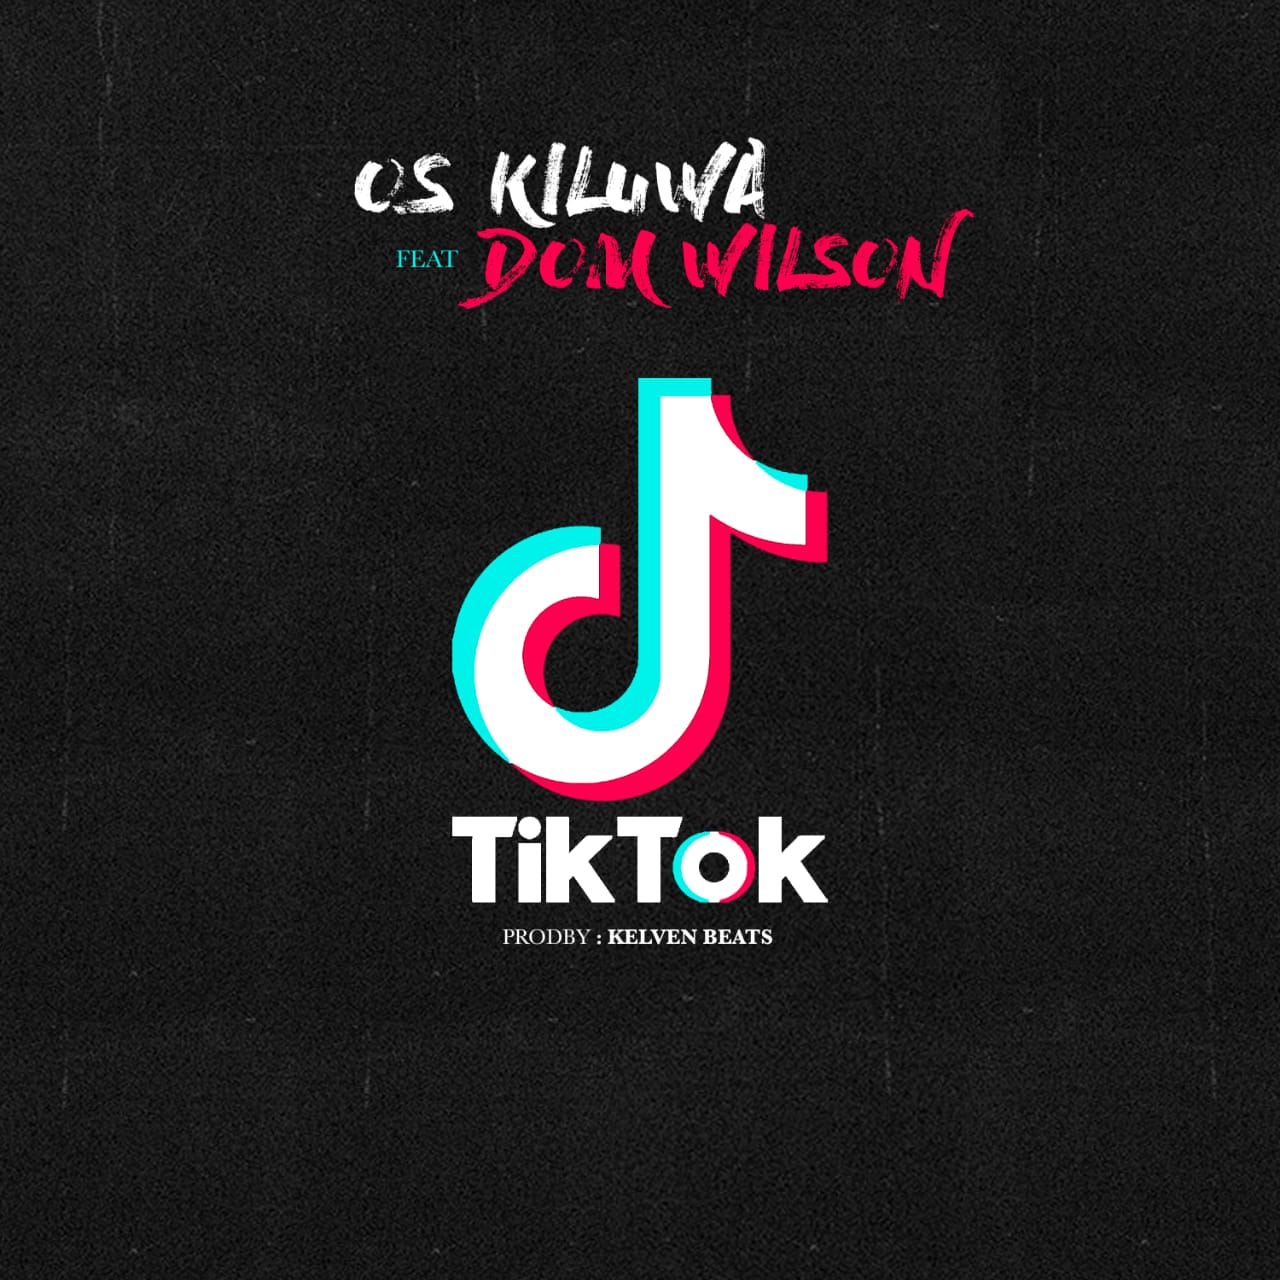 Os Kiluwa fest. Dom Wilson - TiK ToK